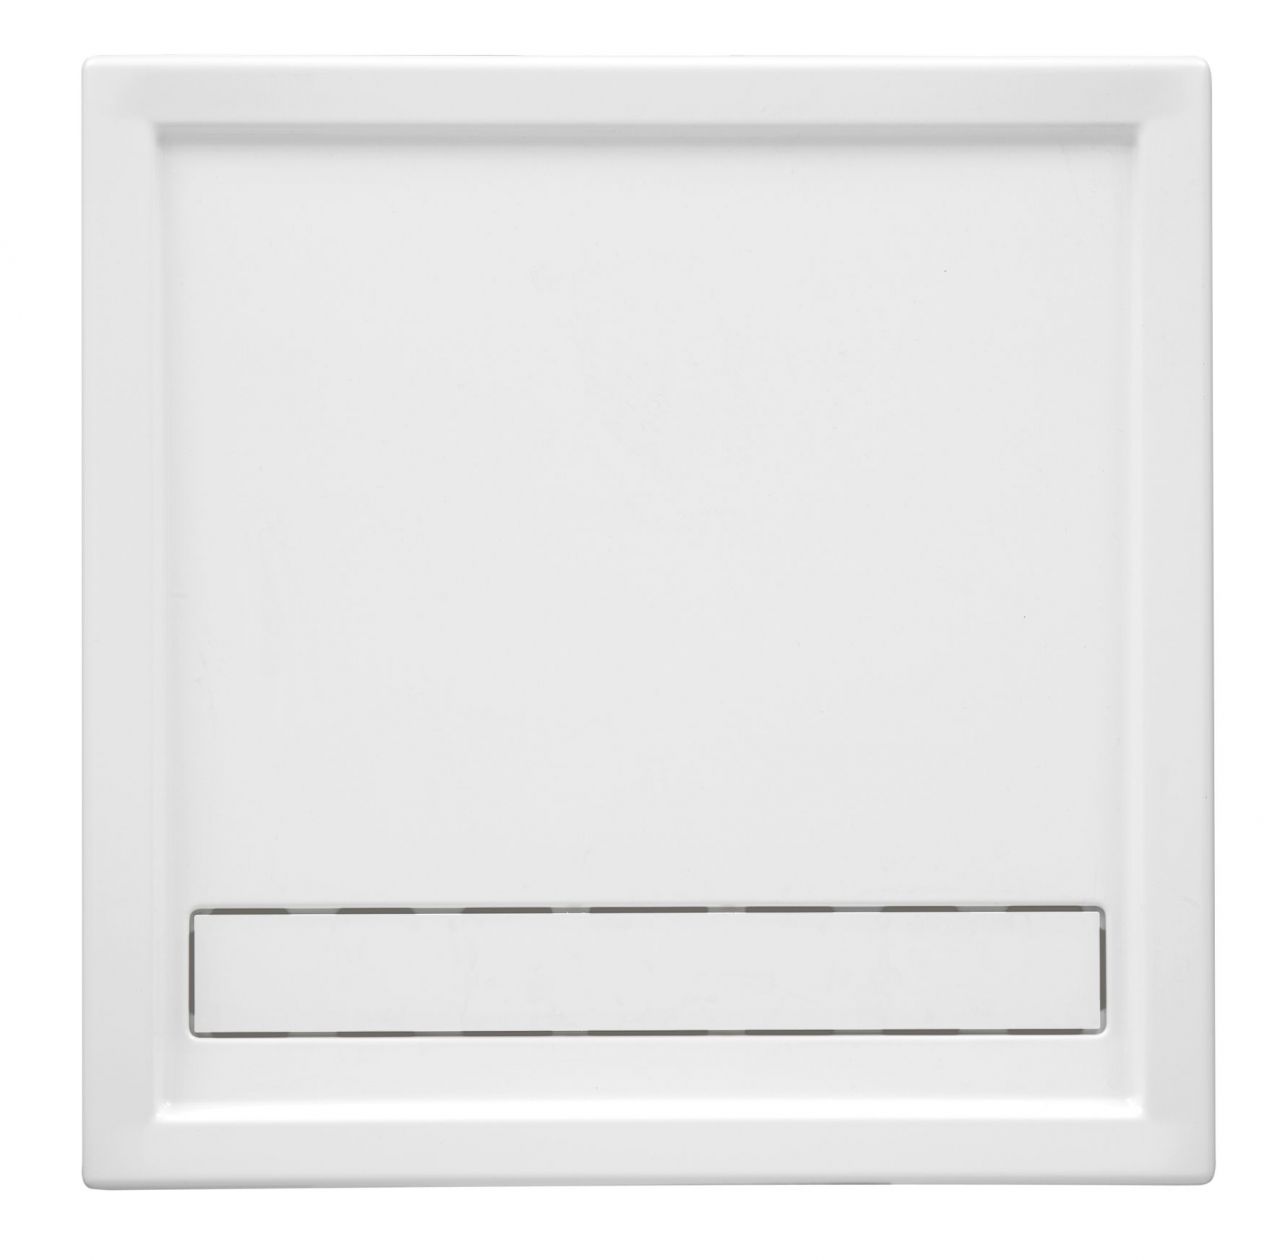 Ottofond Duschwanne Fashion Board 90 x 100 x 3 cm, weiß